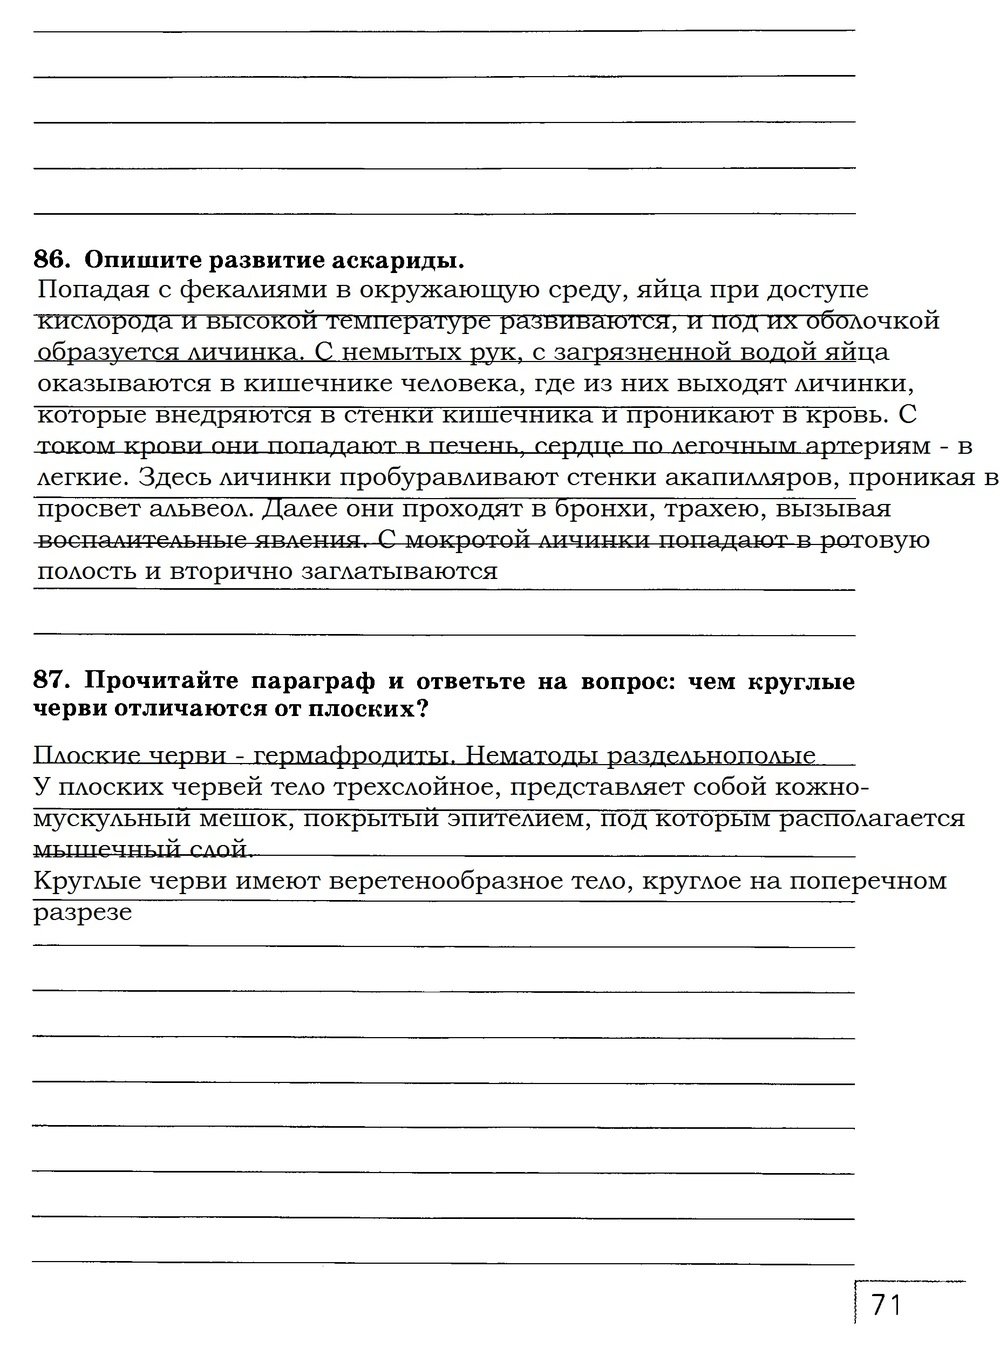 гдз 7 класс рабочая тетрадь страница 71 биология Захаров, Сонин